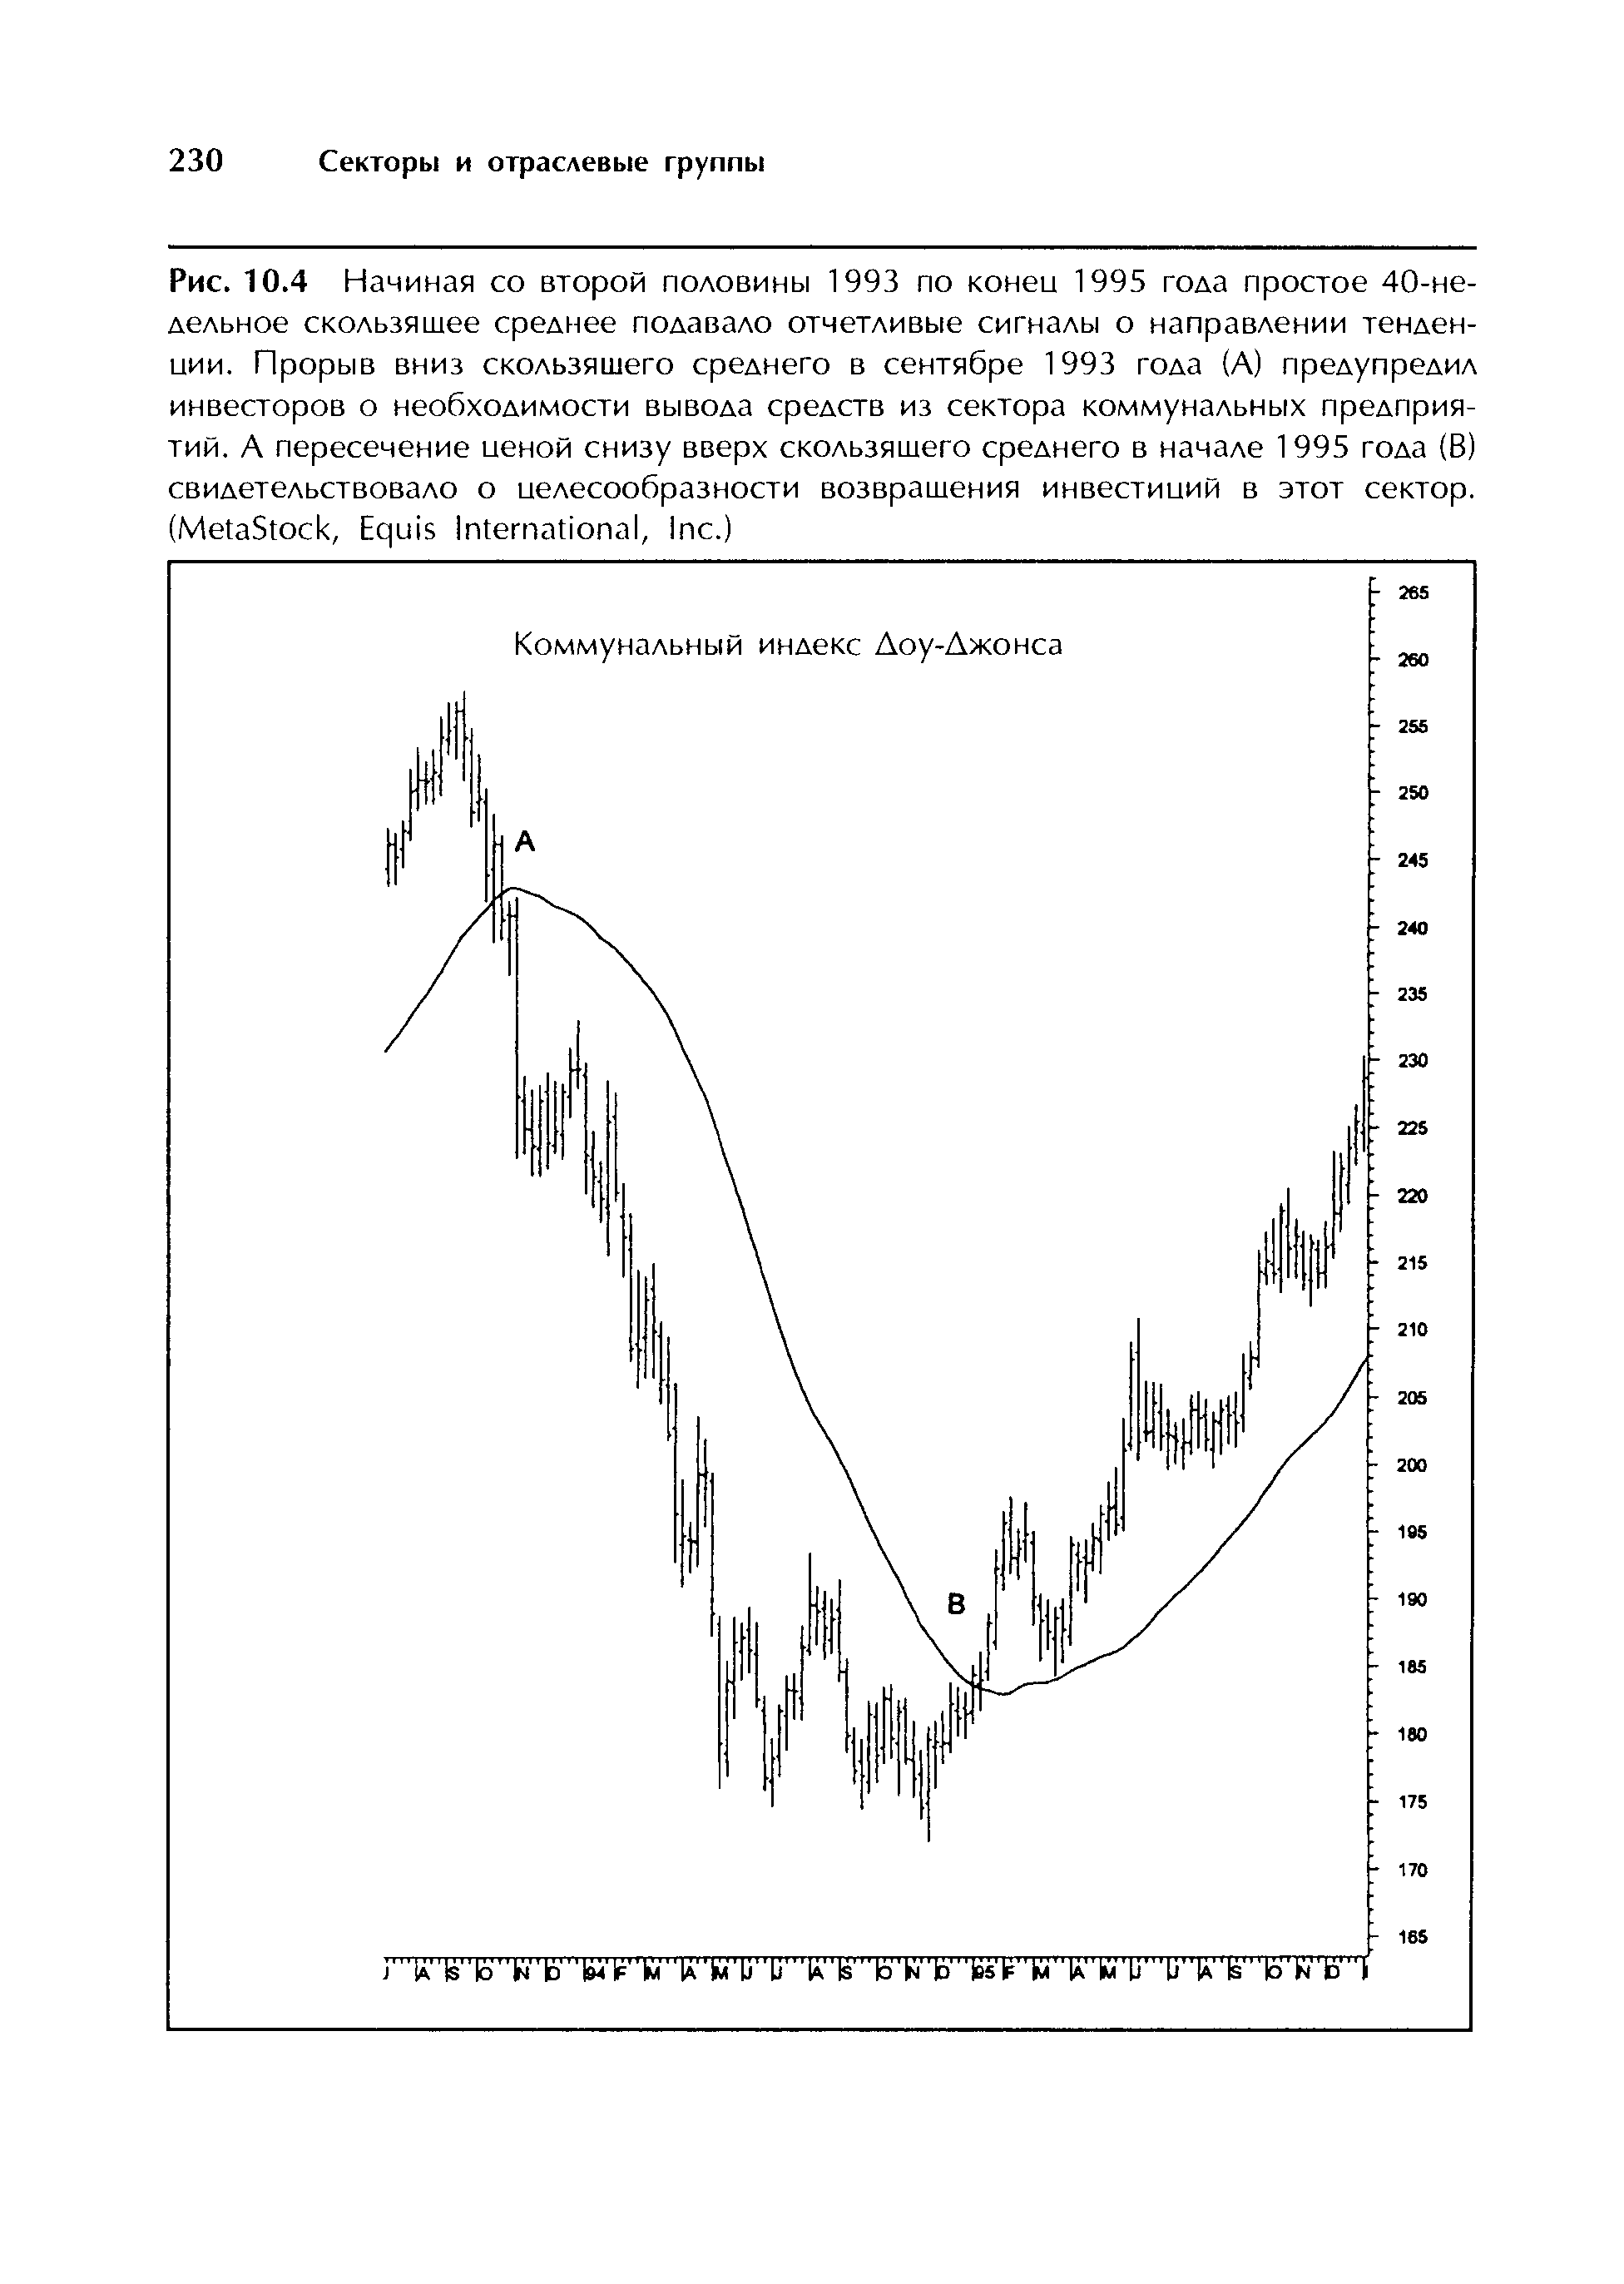 Рис. 10.4 Начиная со второй половины 1993 по коней 1995 года простое 40-не-дельное <a href="/info/4825">скользящее среднее</a> подавало отчетливые сигналы о направлении тенденции. Прорыв вниз <a href="/info/4825">скользящего среднего</a> в сентябре 1993 года (А) предупредил инвесторов о необходимости вывода средств из сектора <a href="/info/37004">коммунальных предприятий</a>. А пересечение иеной снизу вверх <a href="/info/4825">скользящего среднего</a> в начале 1995 года (В) свидетельствовало о целесообразности возвращения инвестиций в этот сектор. (MetaSto k, Equis International, In .)
